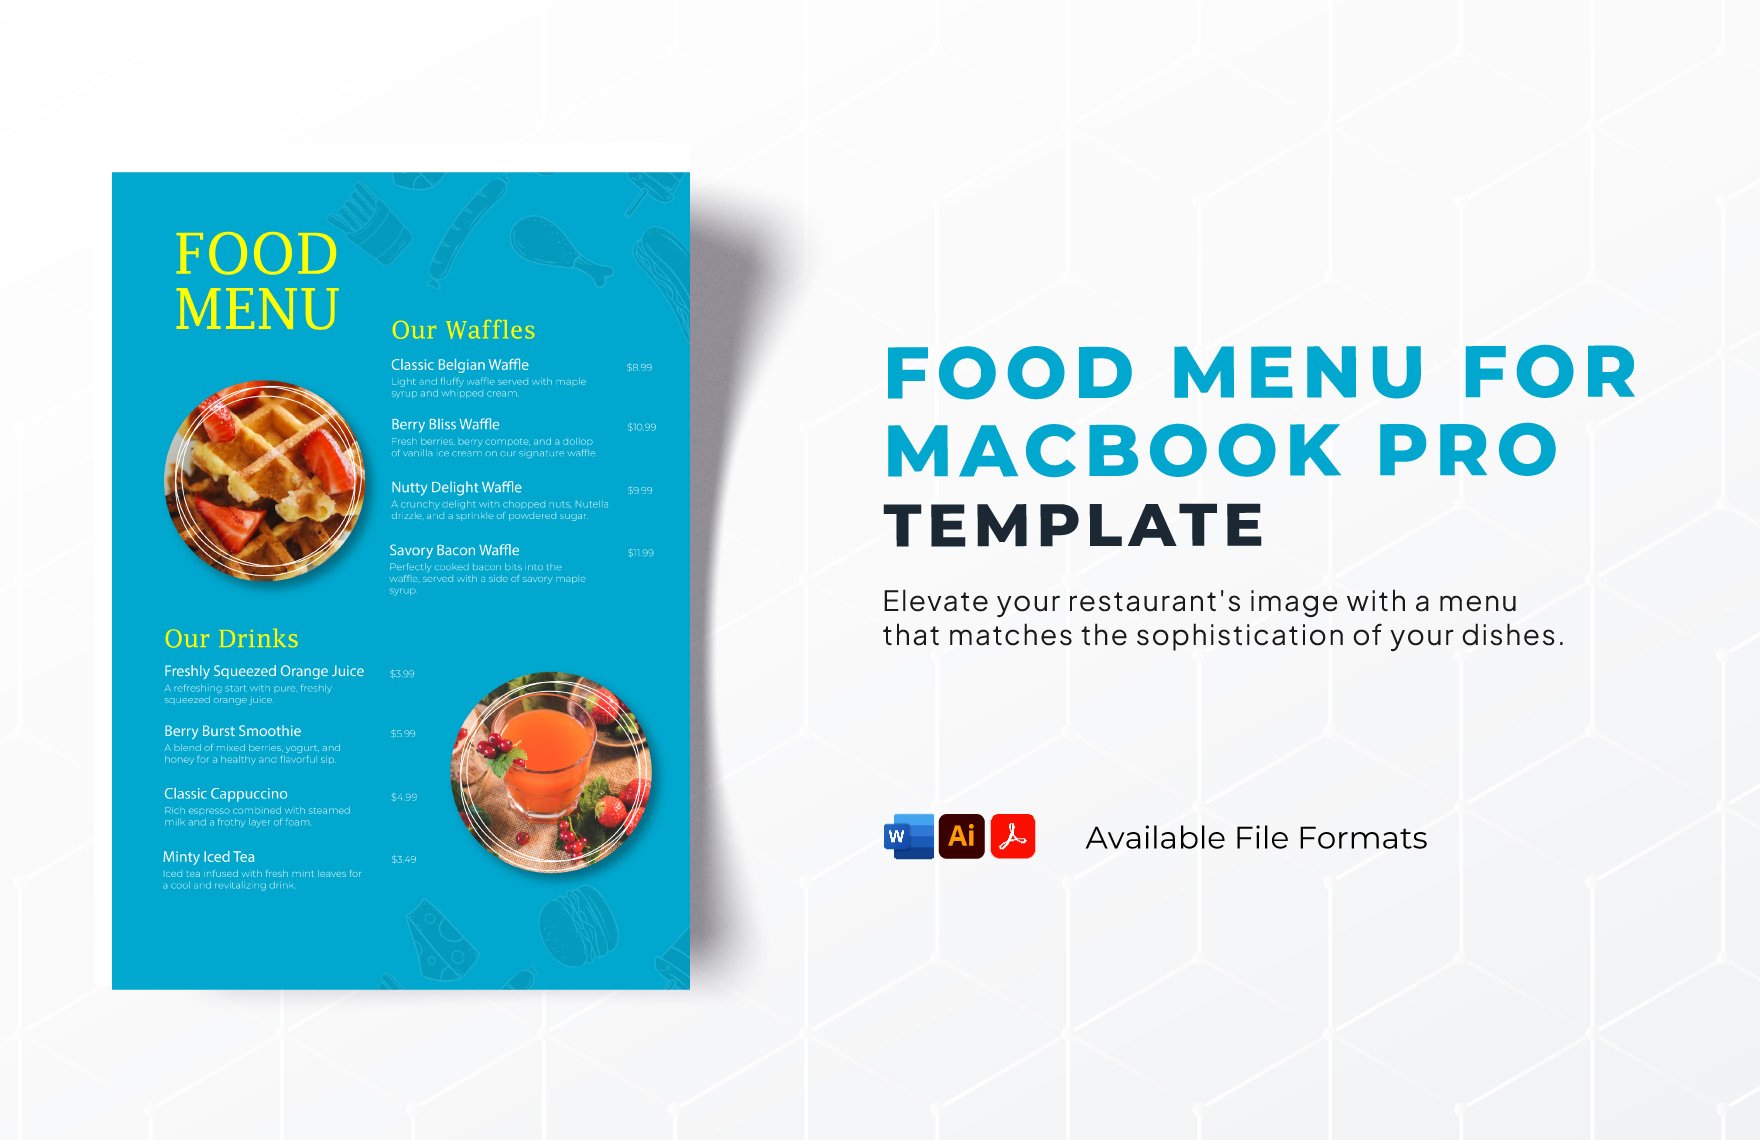 Food Menu for Macbook Pro Template